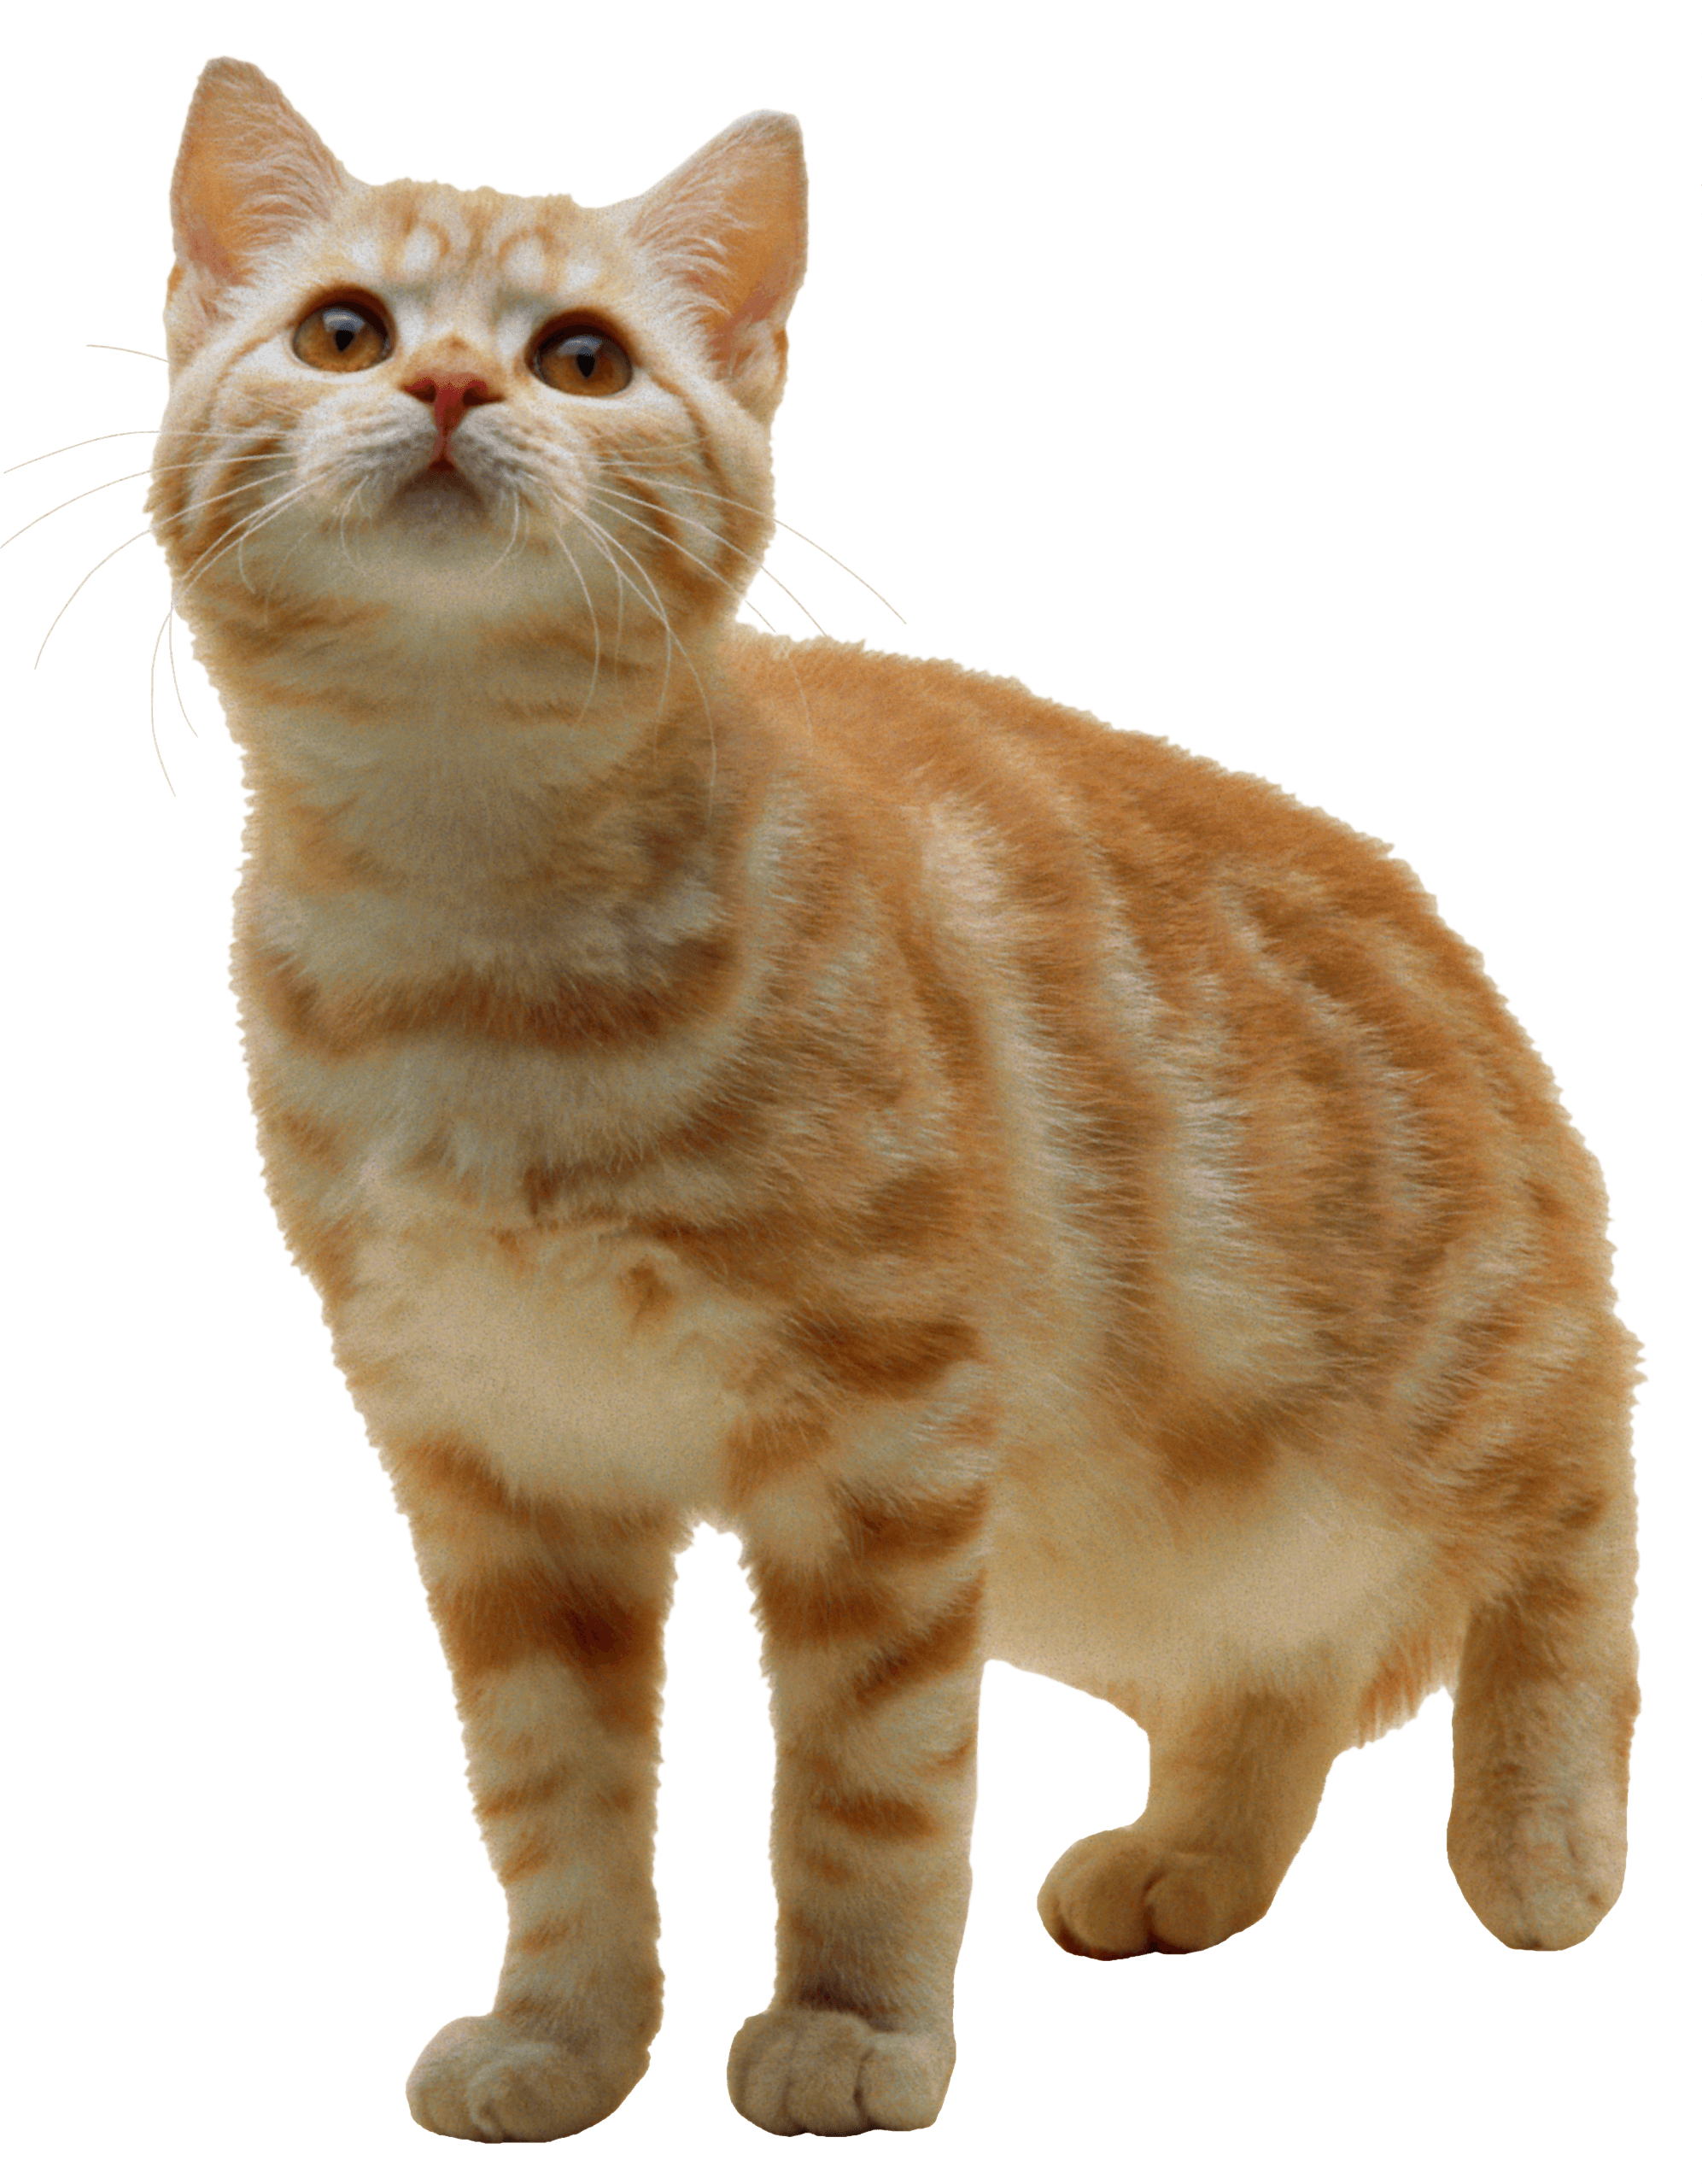 kittens clipart ginger cat